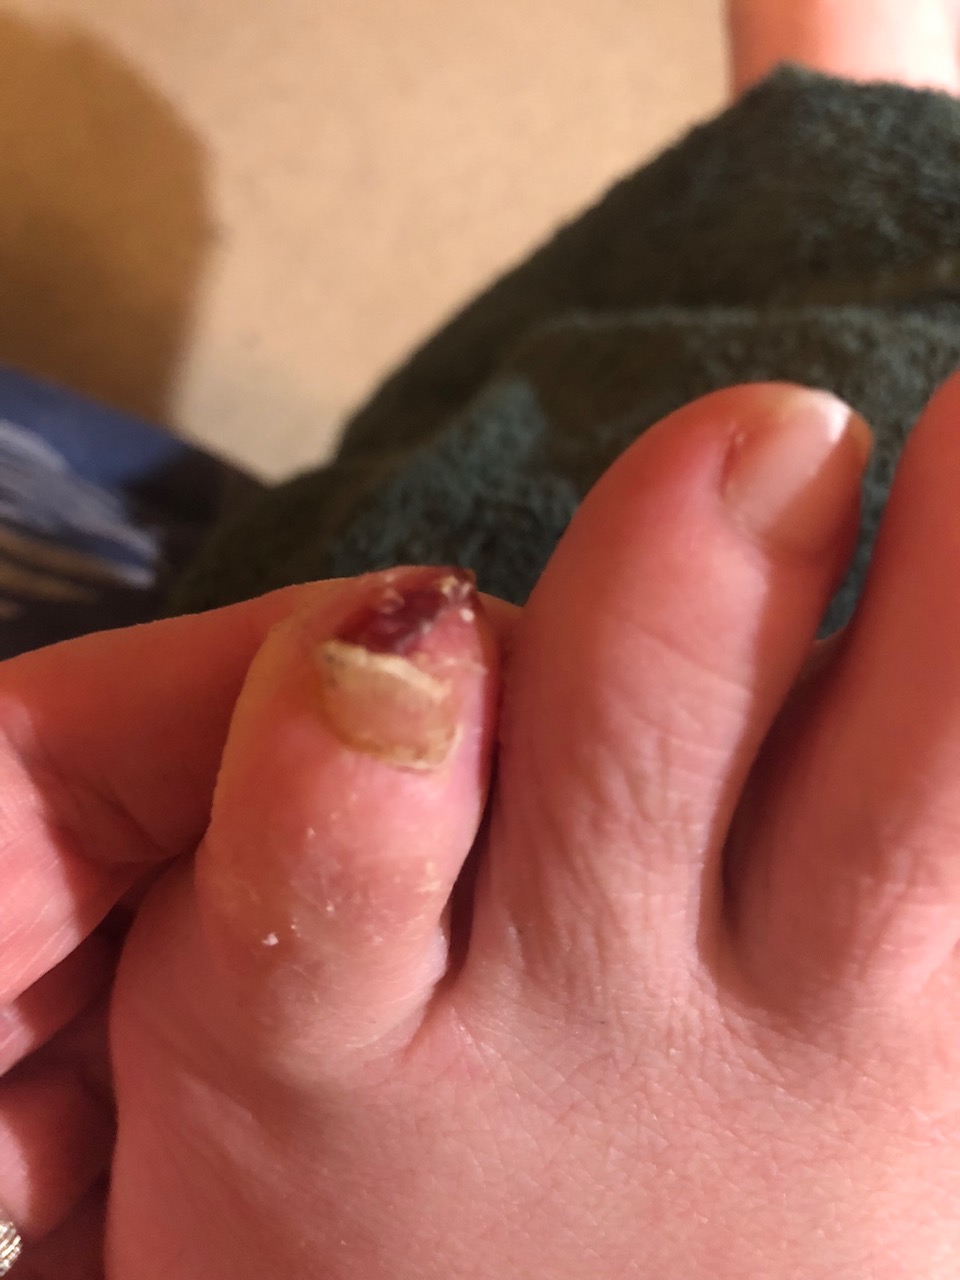 Left little toe split and bleeding